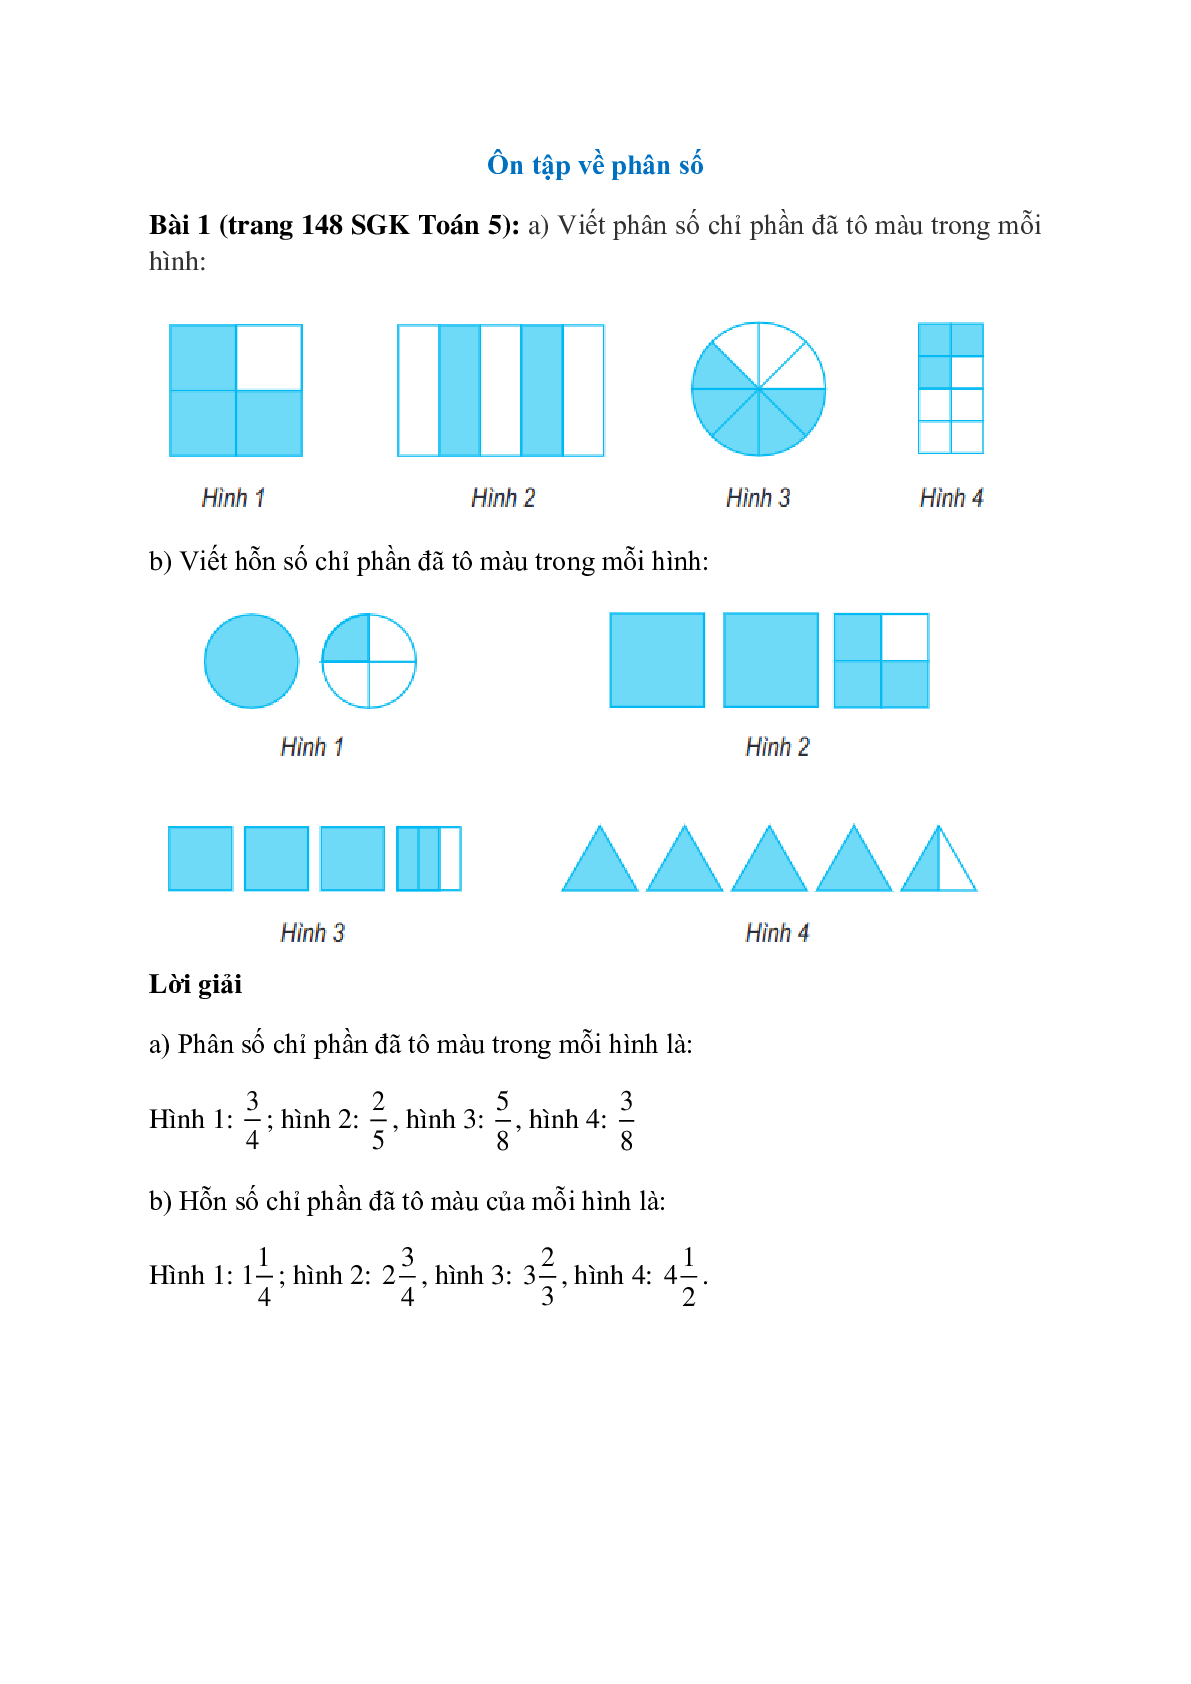 Viết phân số chỉ phần đã tô màu trong mỗi hình (trang 1)